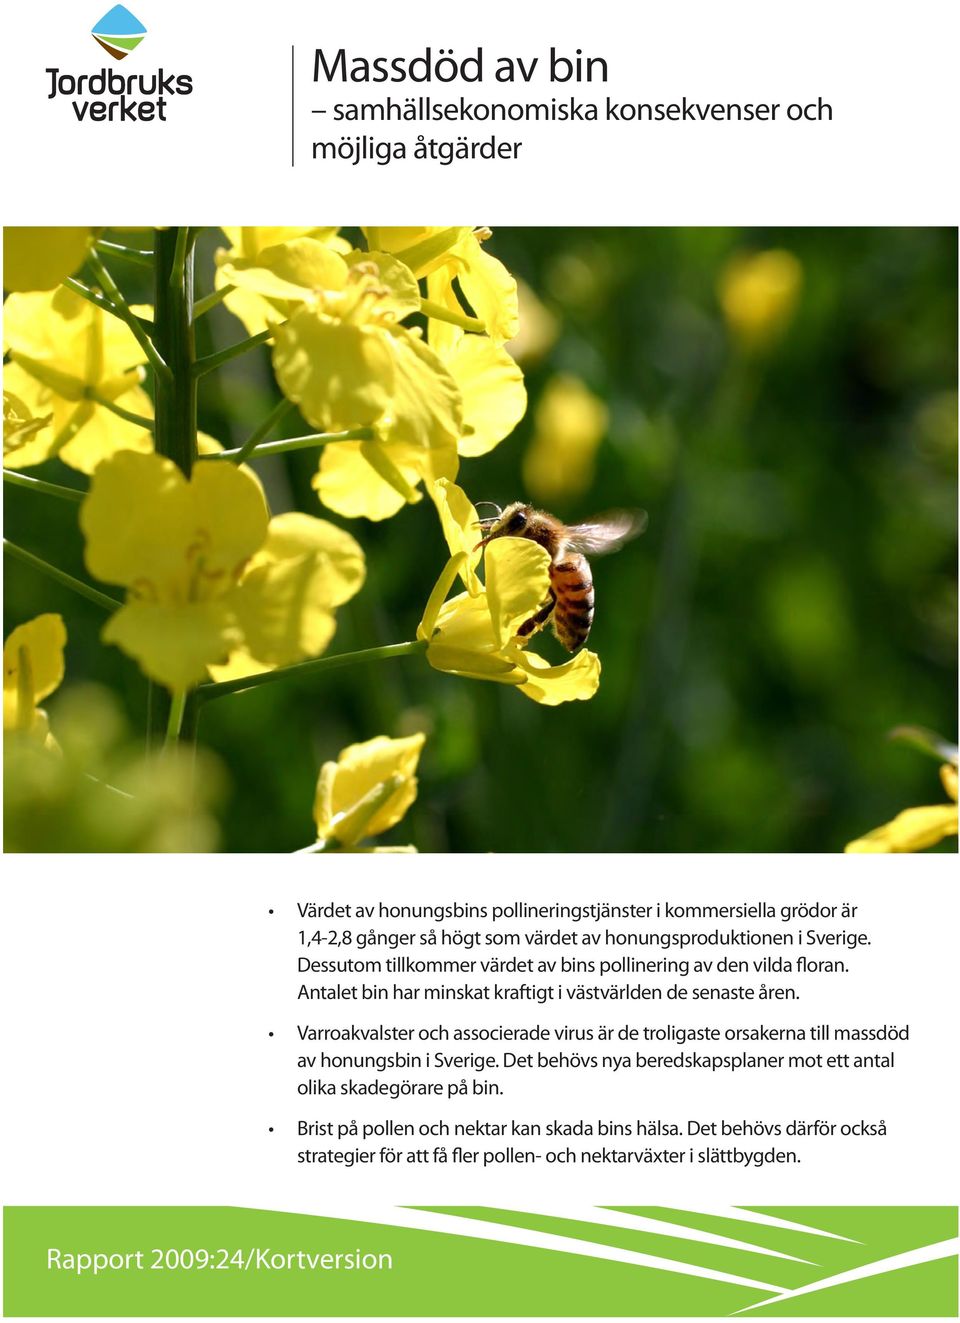 Varroakvalster och associerade virus är de troligaste orsakerna till massdöd av honungsbin i Sverige.